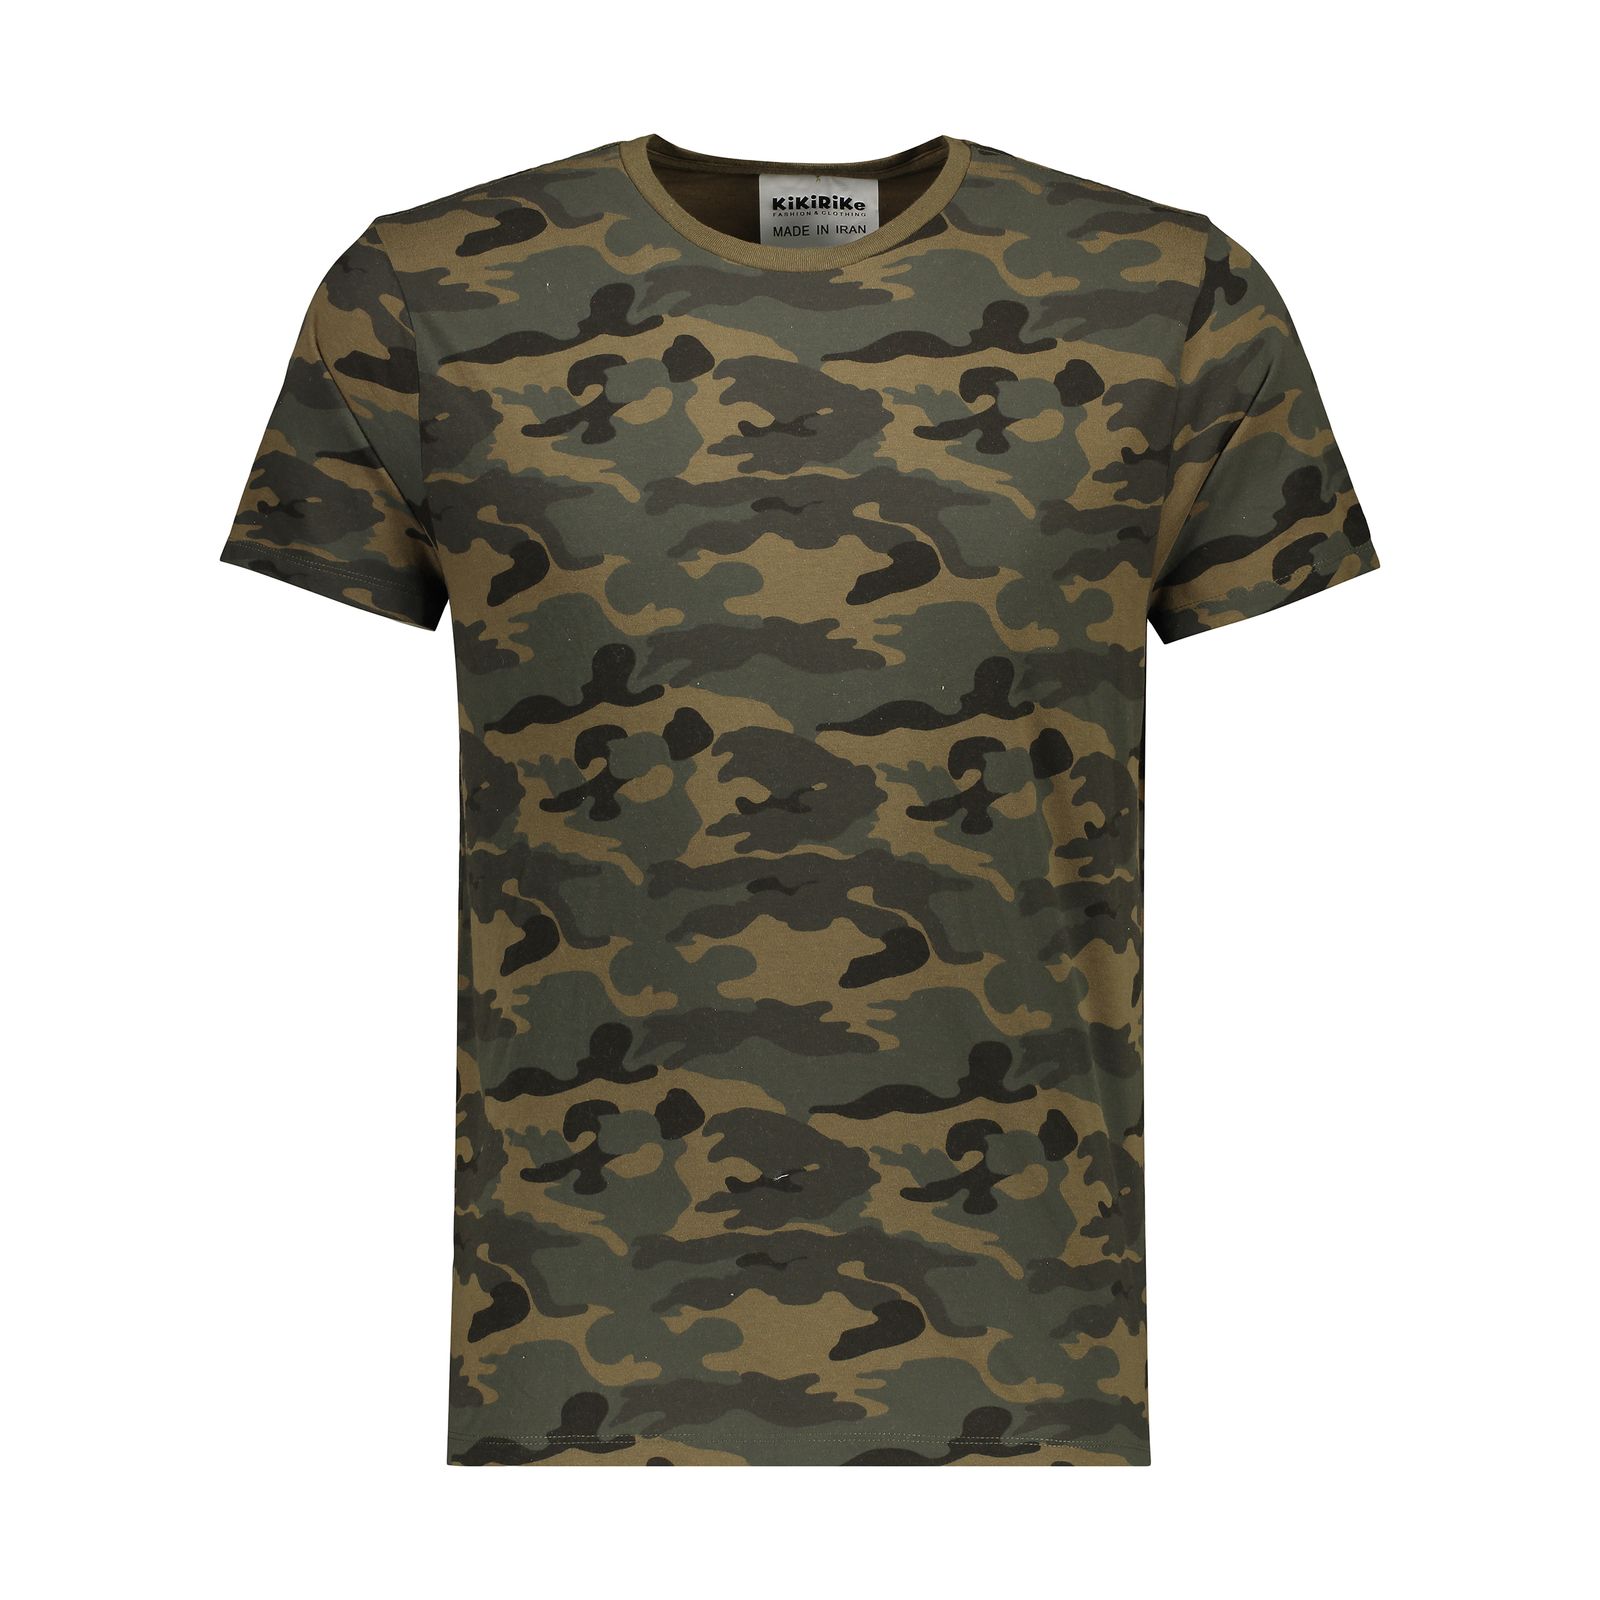 تی شرت مردانه کیکی رایکی مدل MBB20116-41 -  - 1